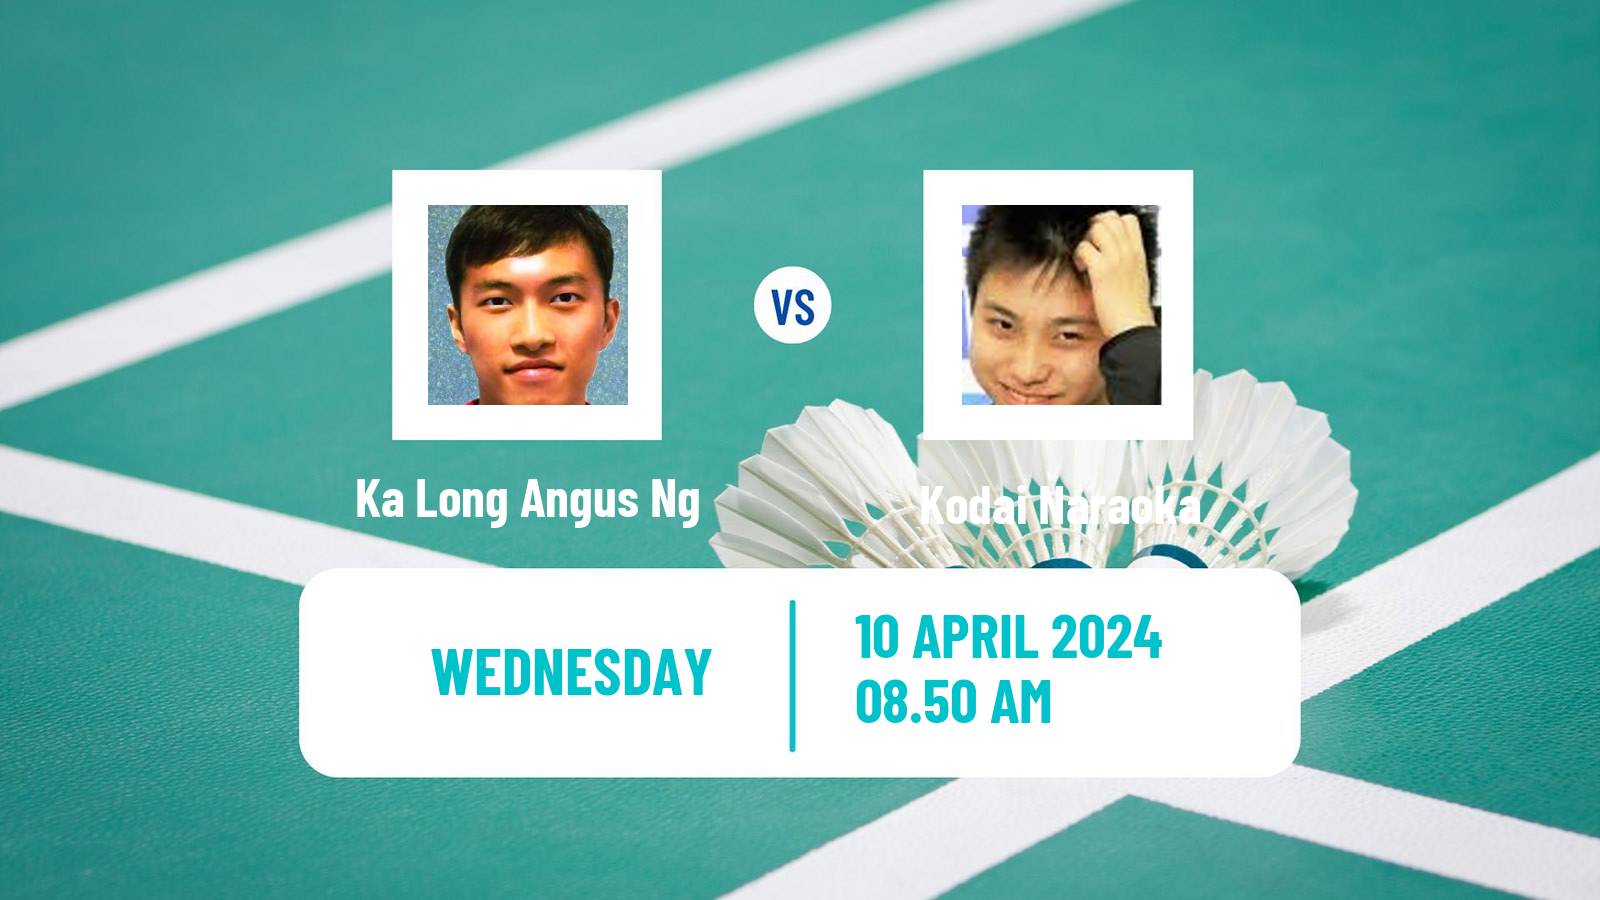 Badminton BWF Asia Championships Men Ka Long Angus Ng - Kodai Naraoka